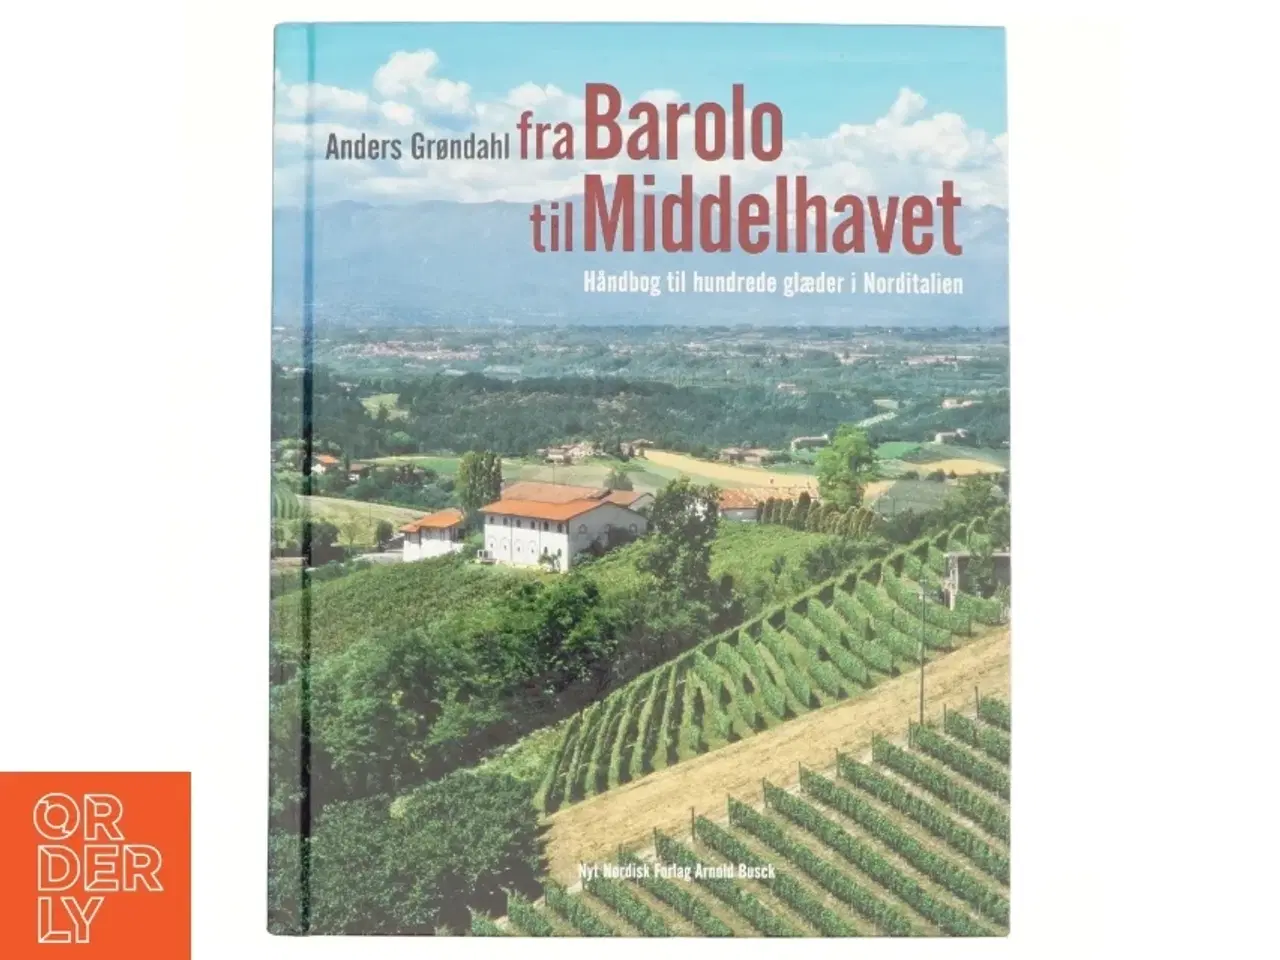 Billede 1 - Fra Barolo til Middelhavet : håndbog til hundrede glæder i Norditalien (Bog)